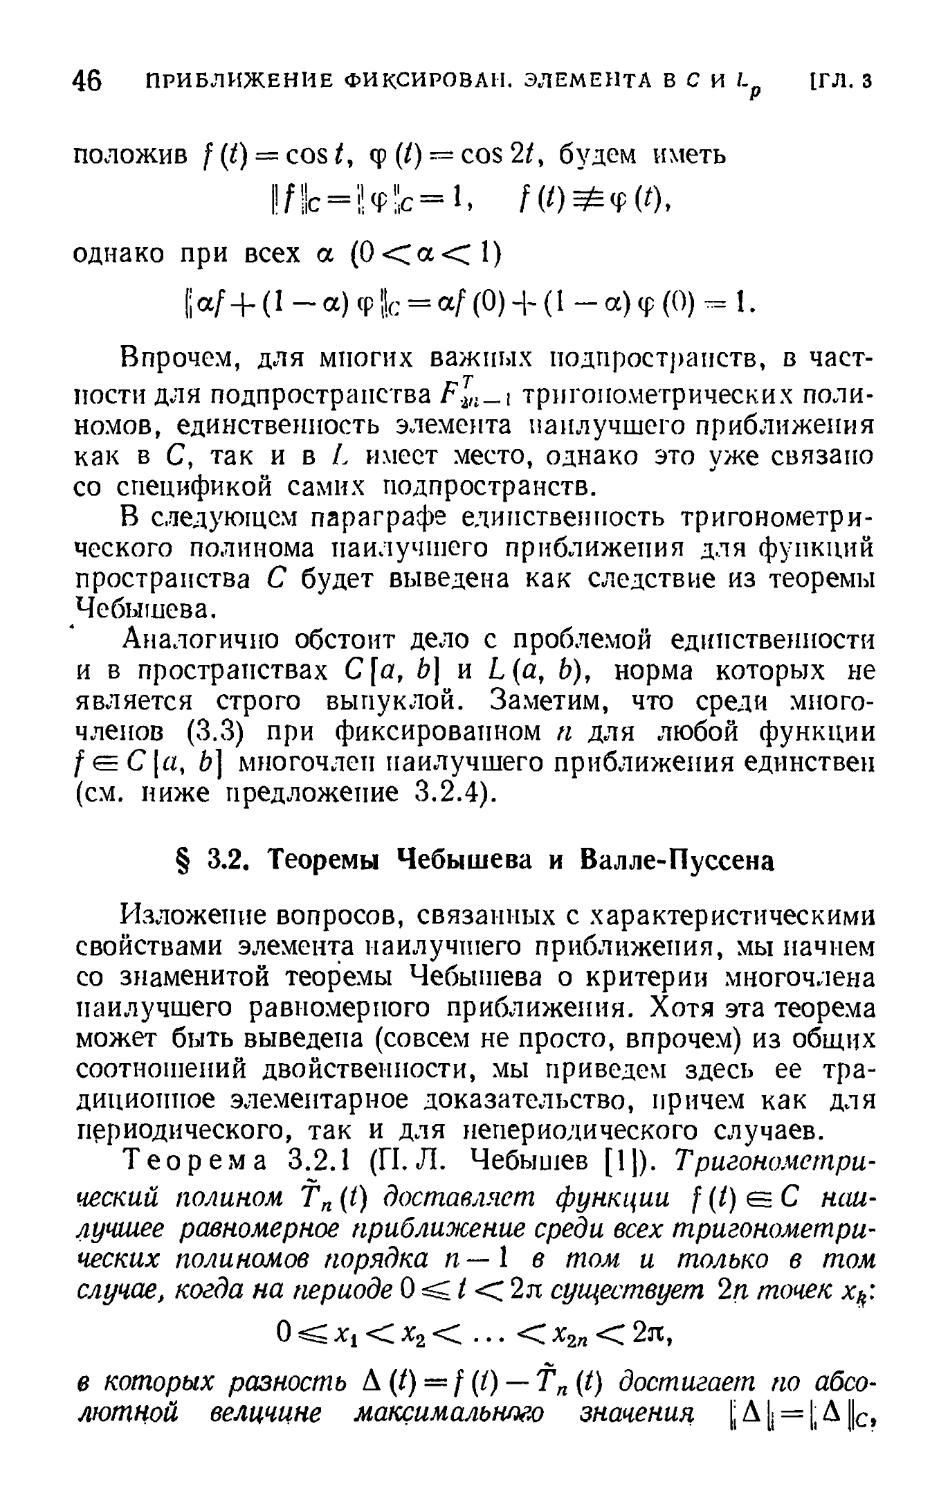 § 3.2. Теоремы Чебышева и Валле-Пуссена